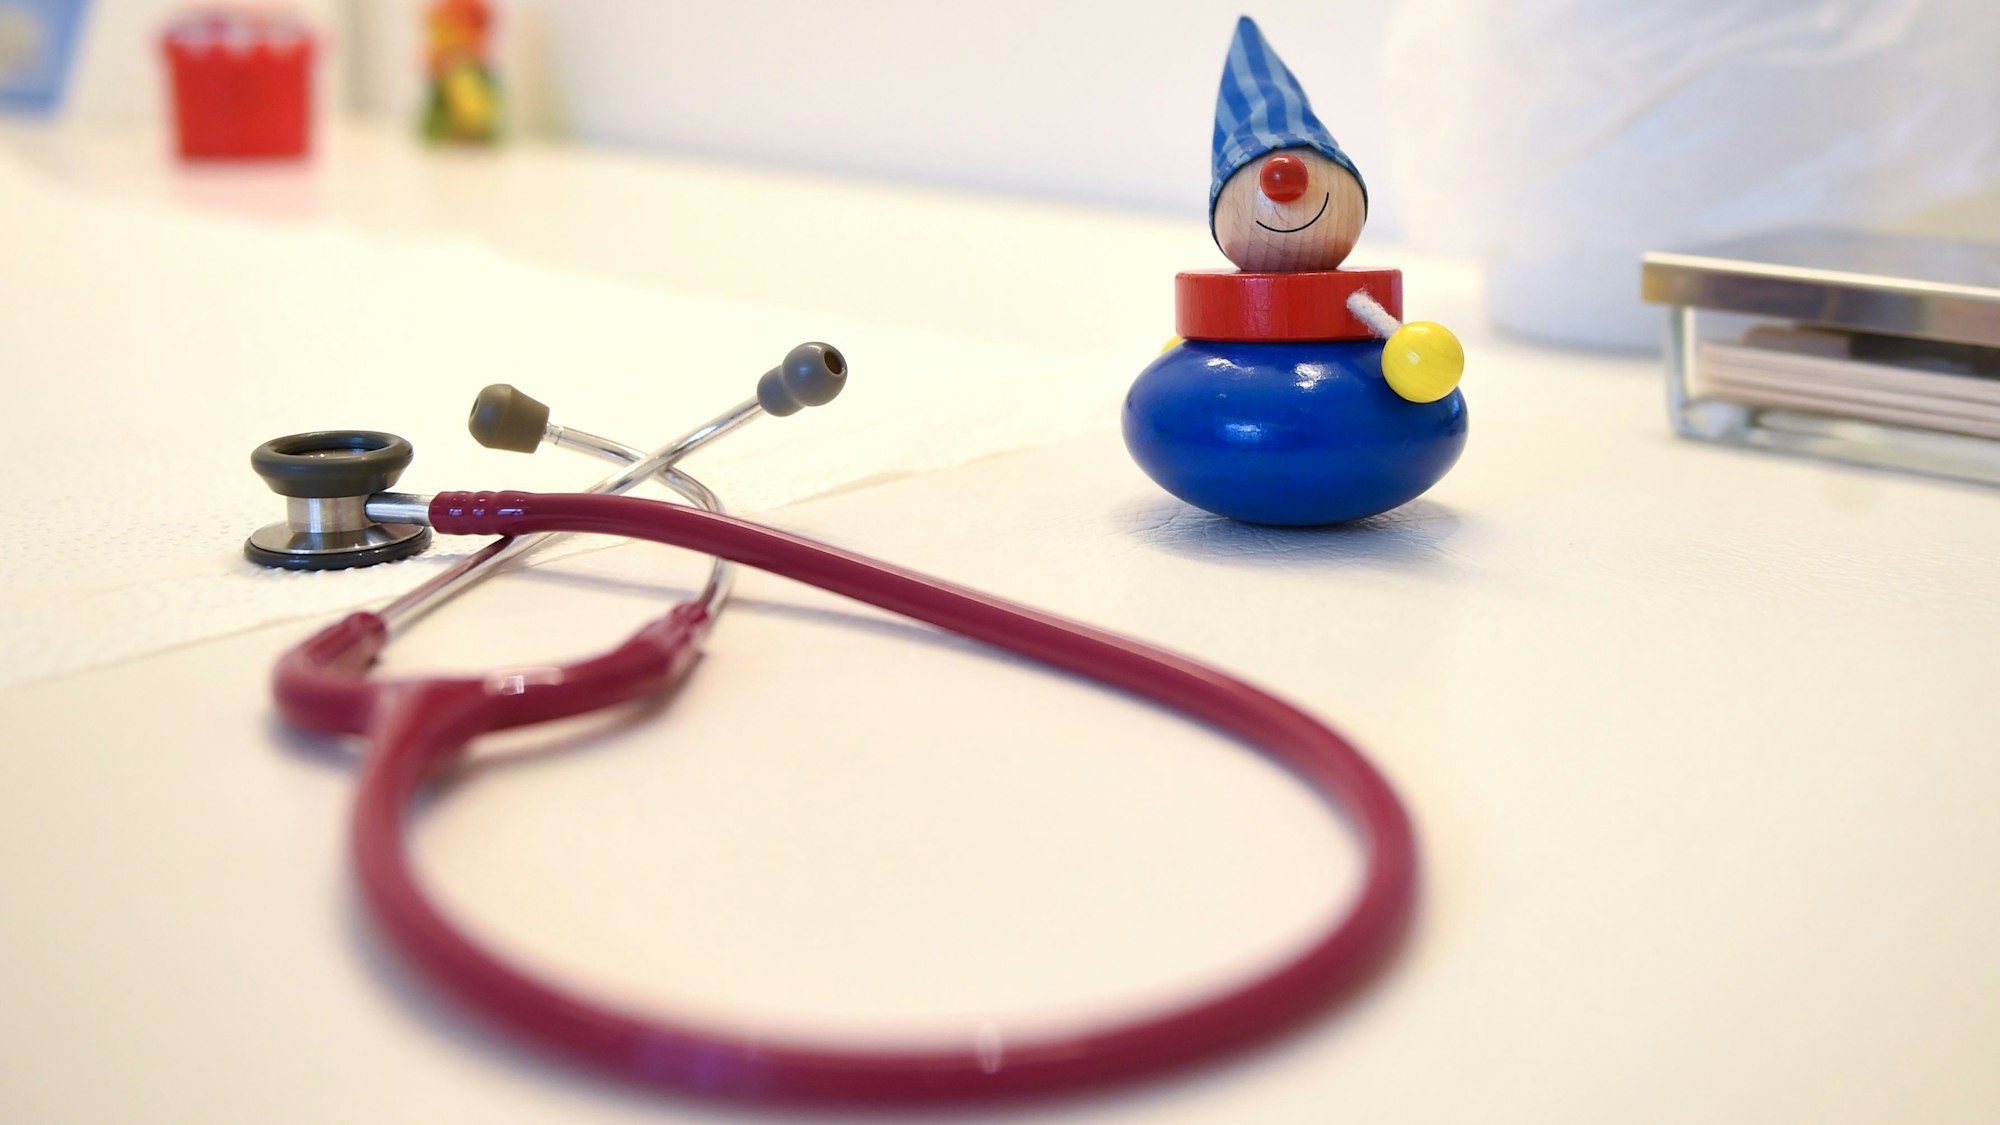 Ein Stethoskop und Kinderspielzeug liegen in einer Kinderarztpraxis auf einem Tisch. (Symbolbild)